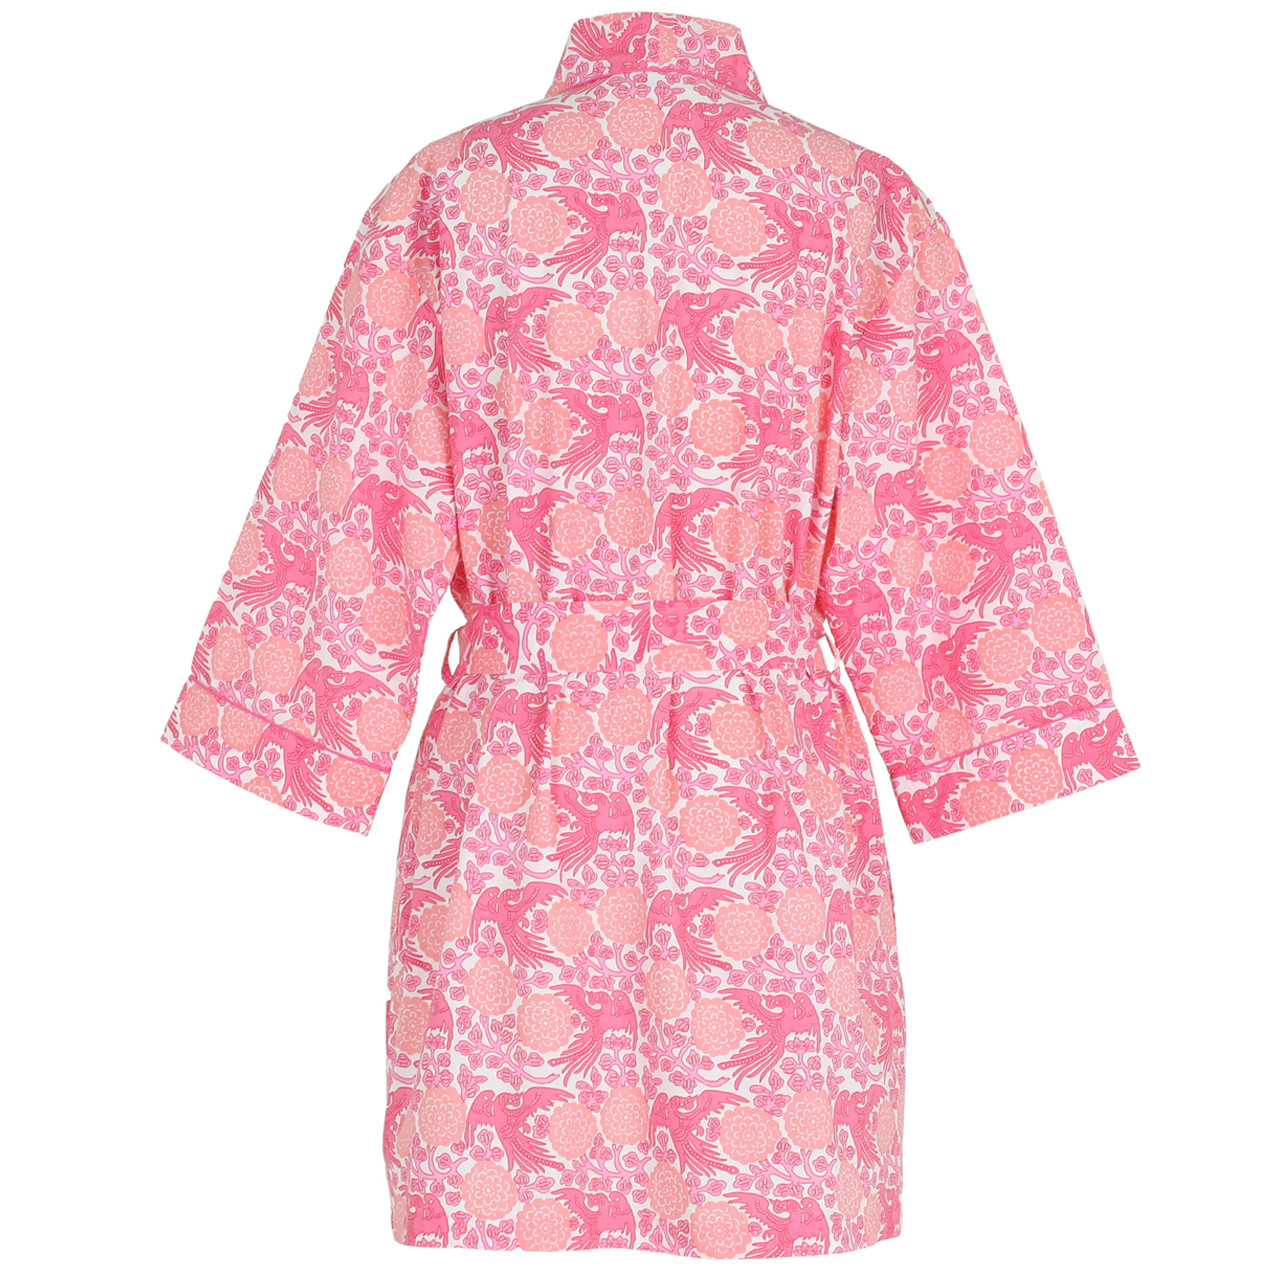 Kimono Robe & Pajamas Pattern - Beginners